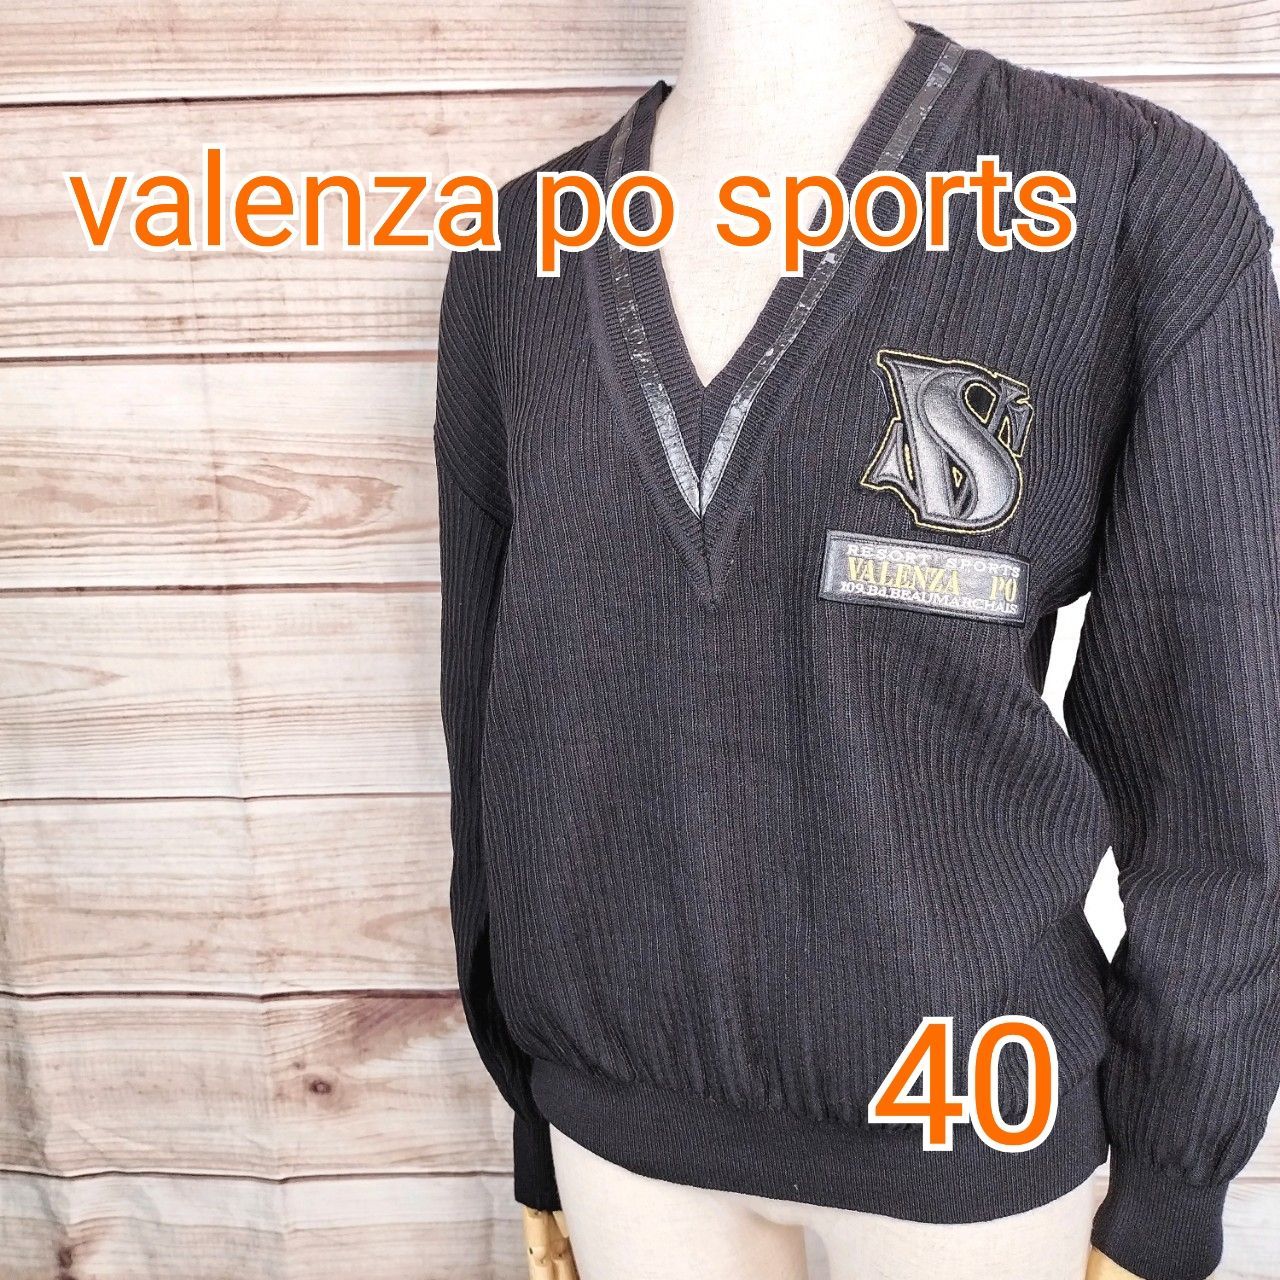 大幅割引美品「Valenza po Sports バレンザポースポーツ」長袖 ニット セーター (スーツ セットアップ 上下 1/2) モール 大きめ 華やか 黒 シルバー Lサイズ